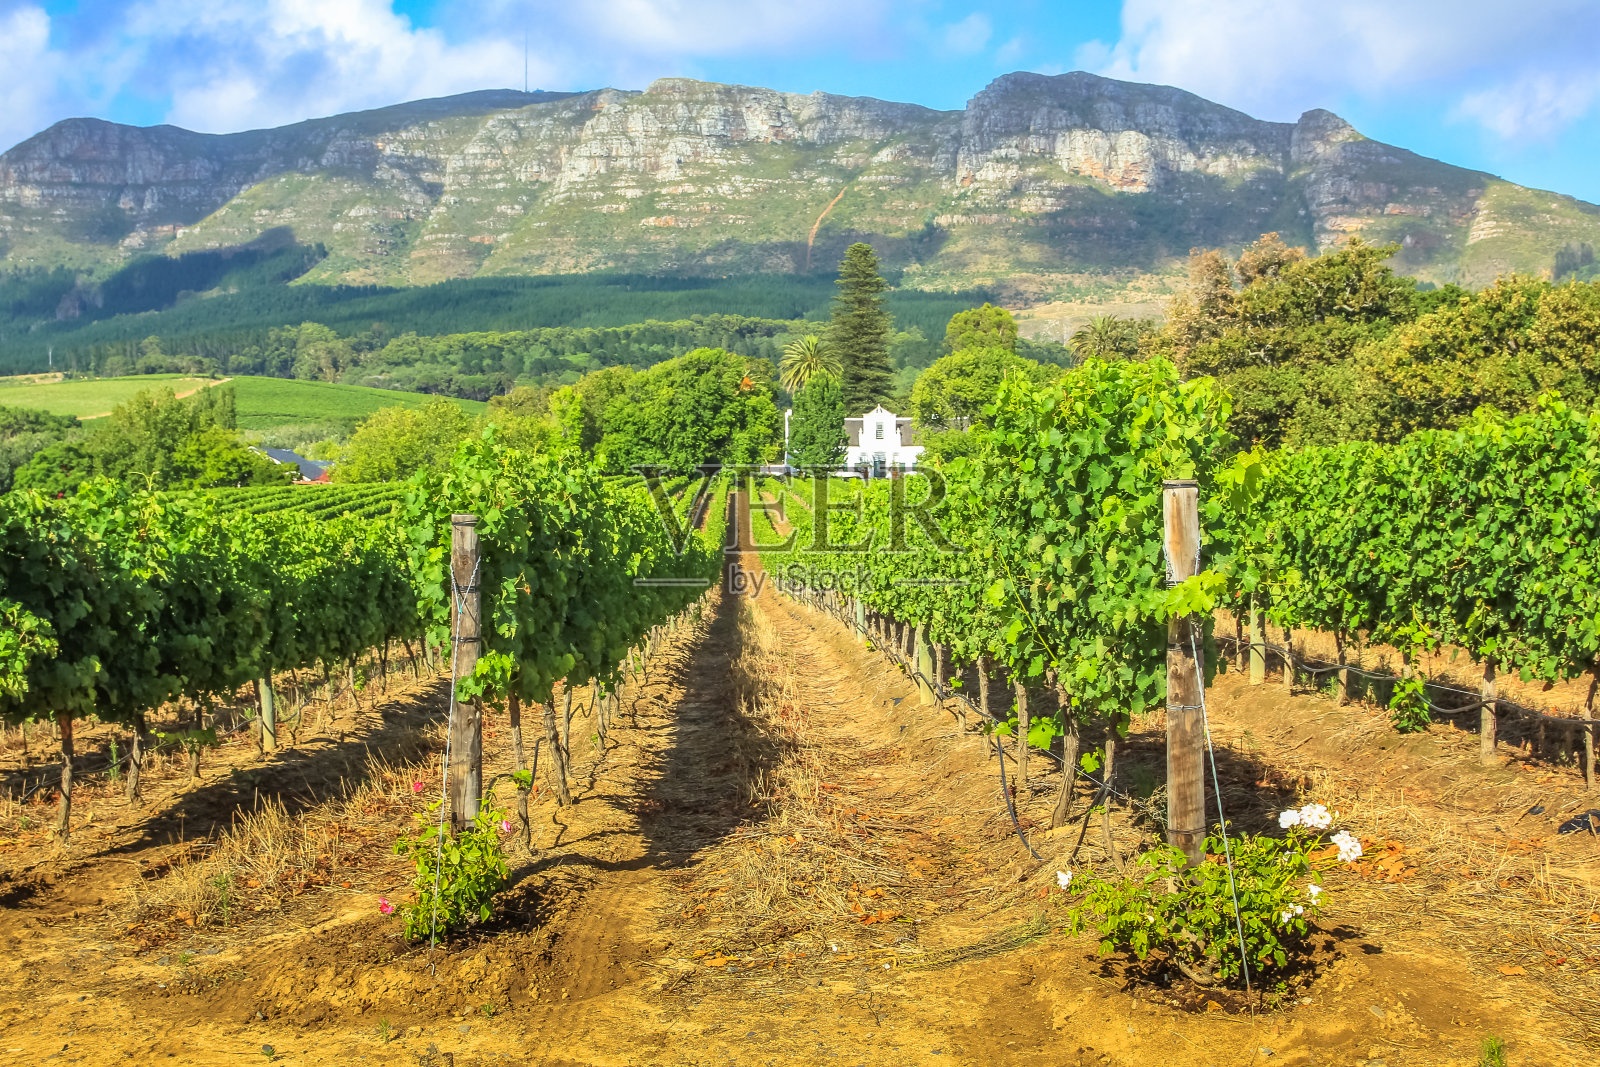 Stellenbosch葡萄酒之路照片摄影图片